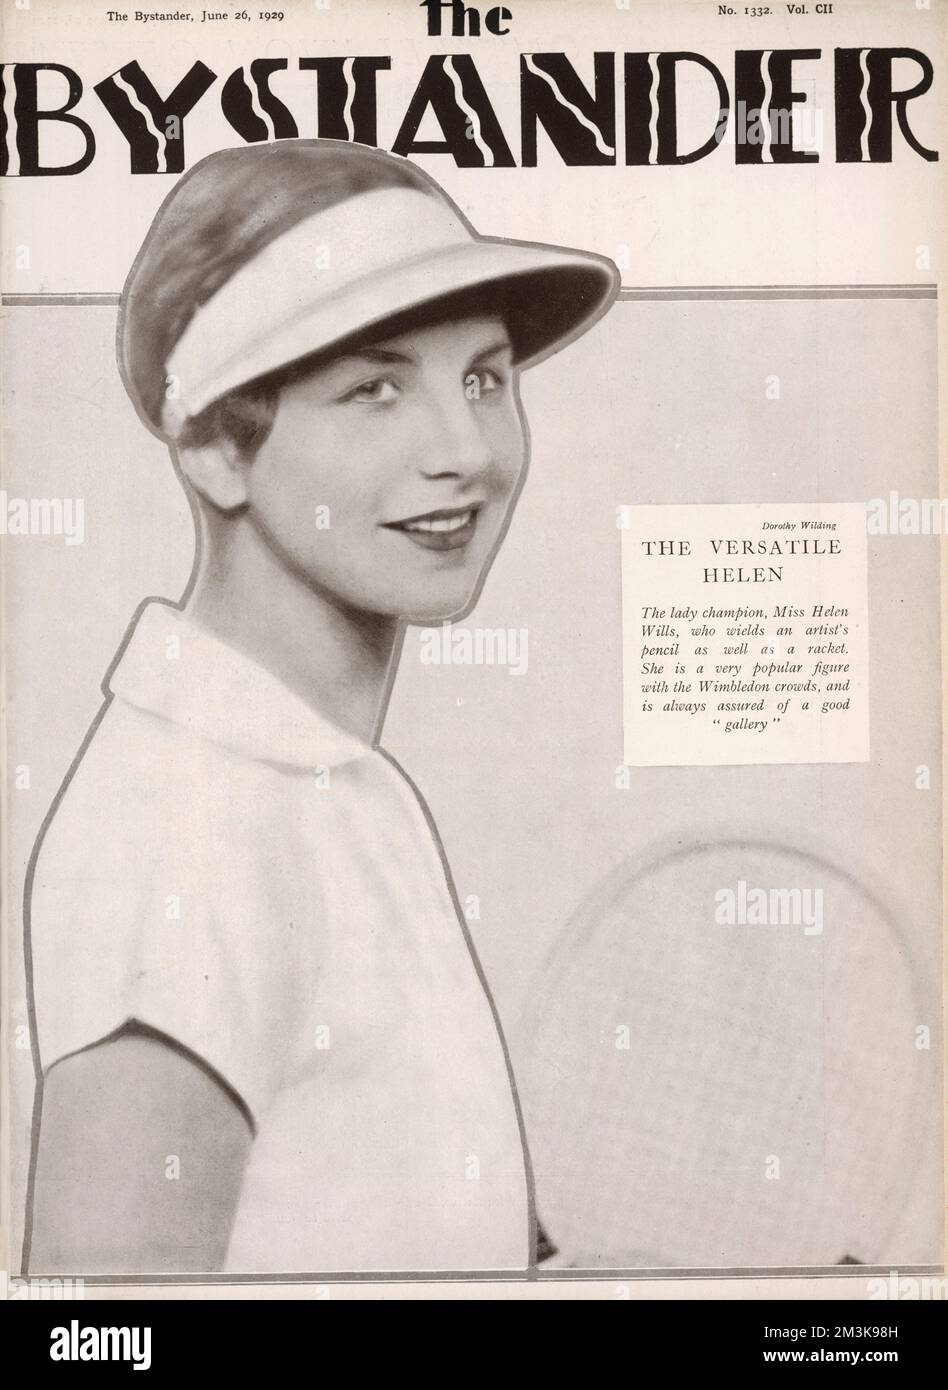 HELEN WILL MOODY American Tennisspielerin und achtmal Wimbledon-Sieger. Der Spitzname „Little Miss Poker Face“, aber ein großer Favorit für Zuschauer! Datum: 1905 - 1998 Stockfoto